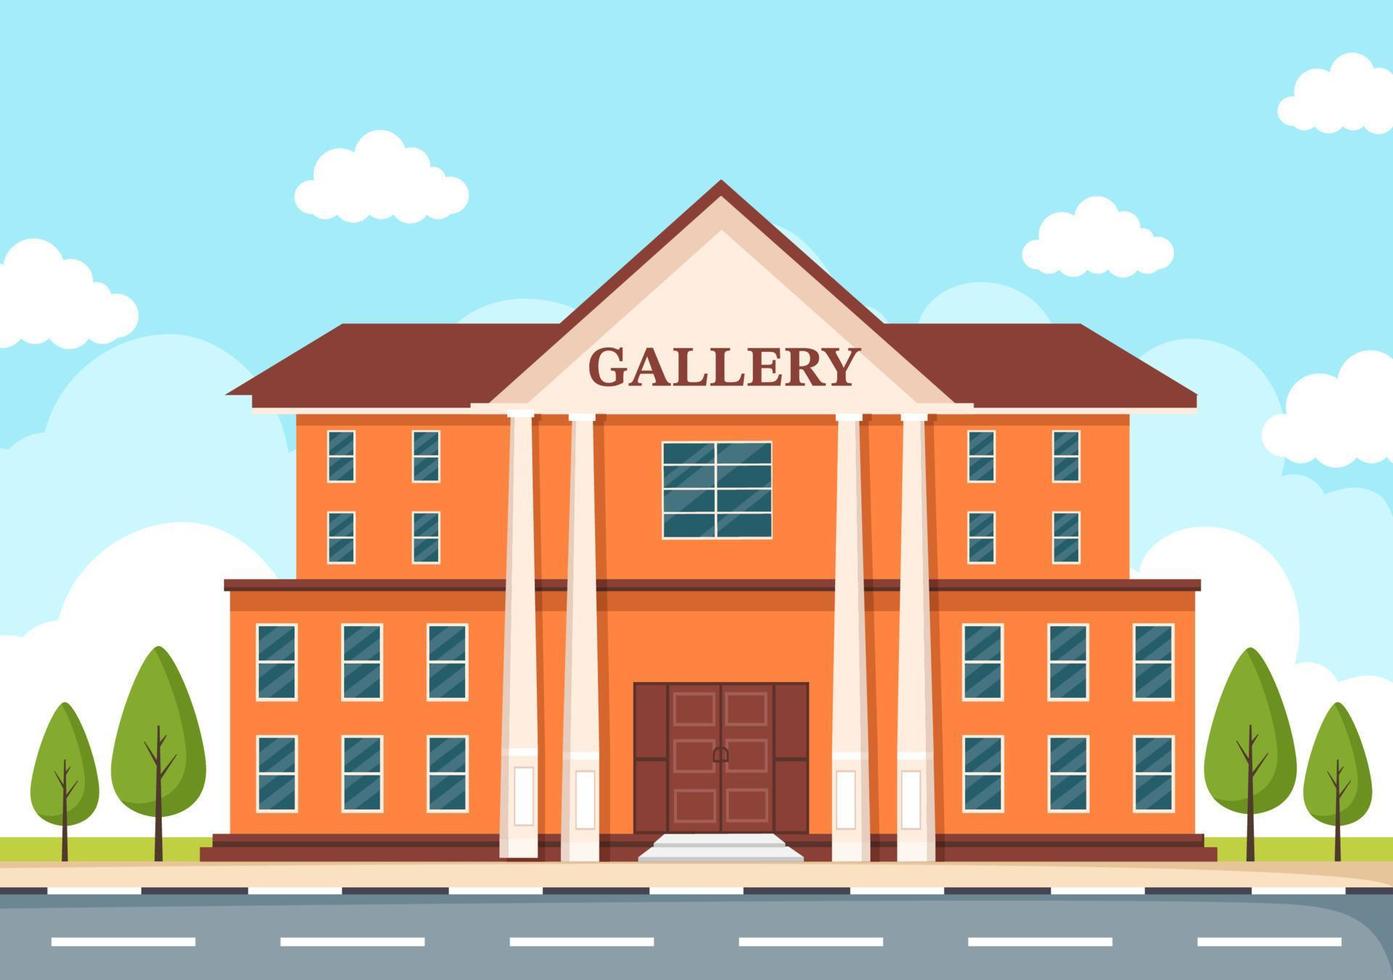 kunstgalerie museumgebouw cartoon afbeelding met tentoonstelling, cultuur, beeldhouwkunst en schilderkunst voor sommige mensen om het in een vlakke stijl te zien vector